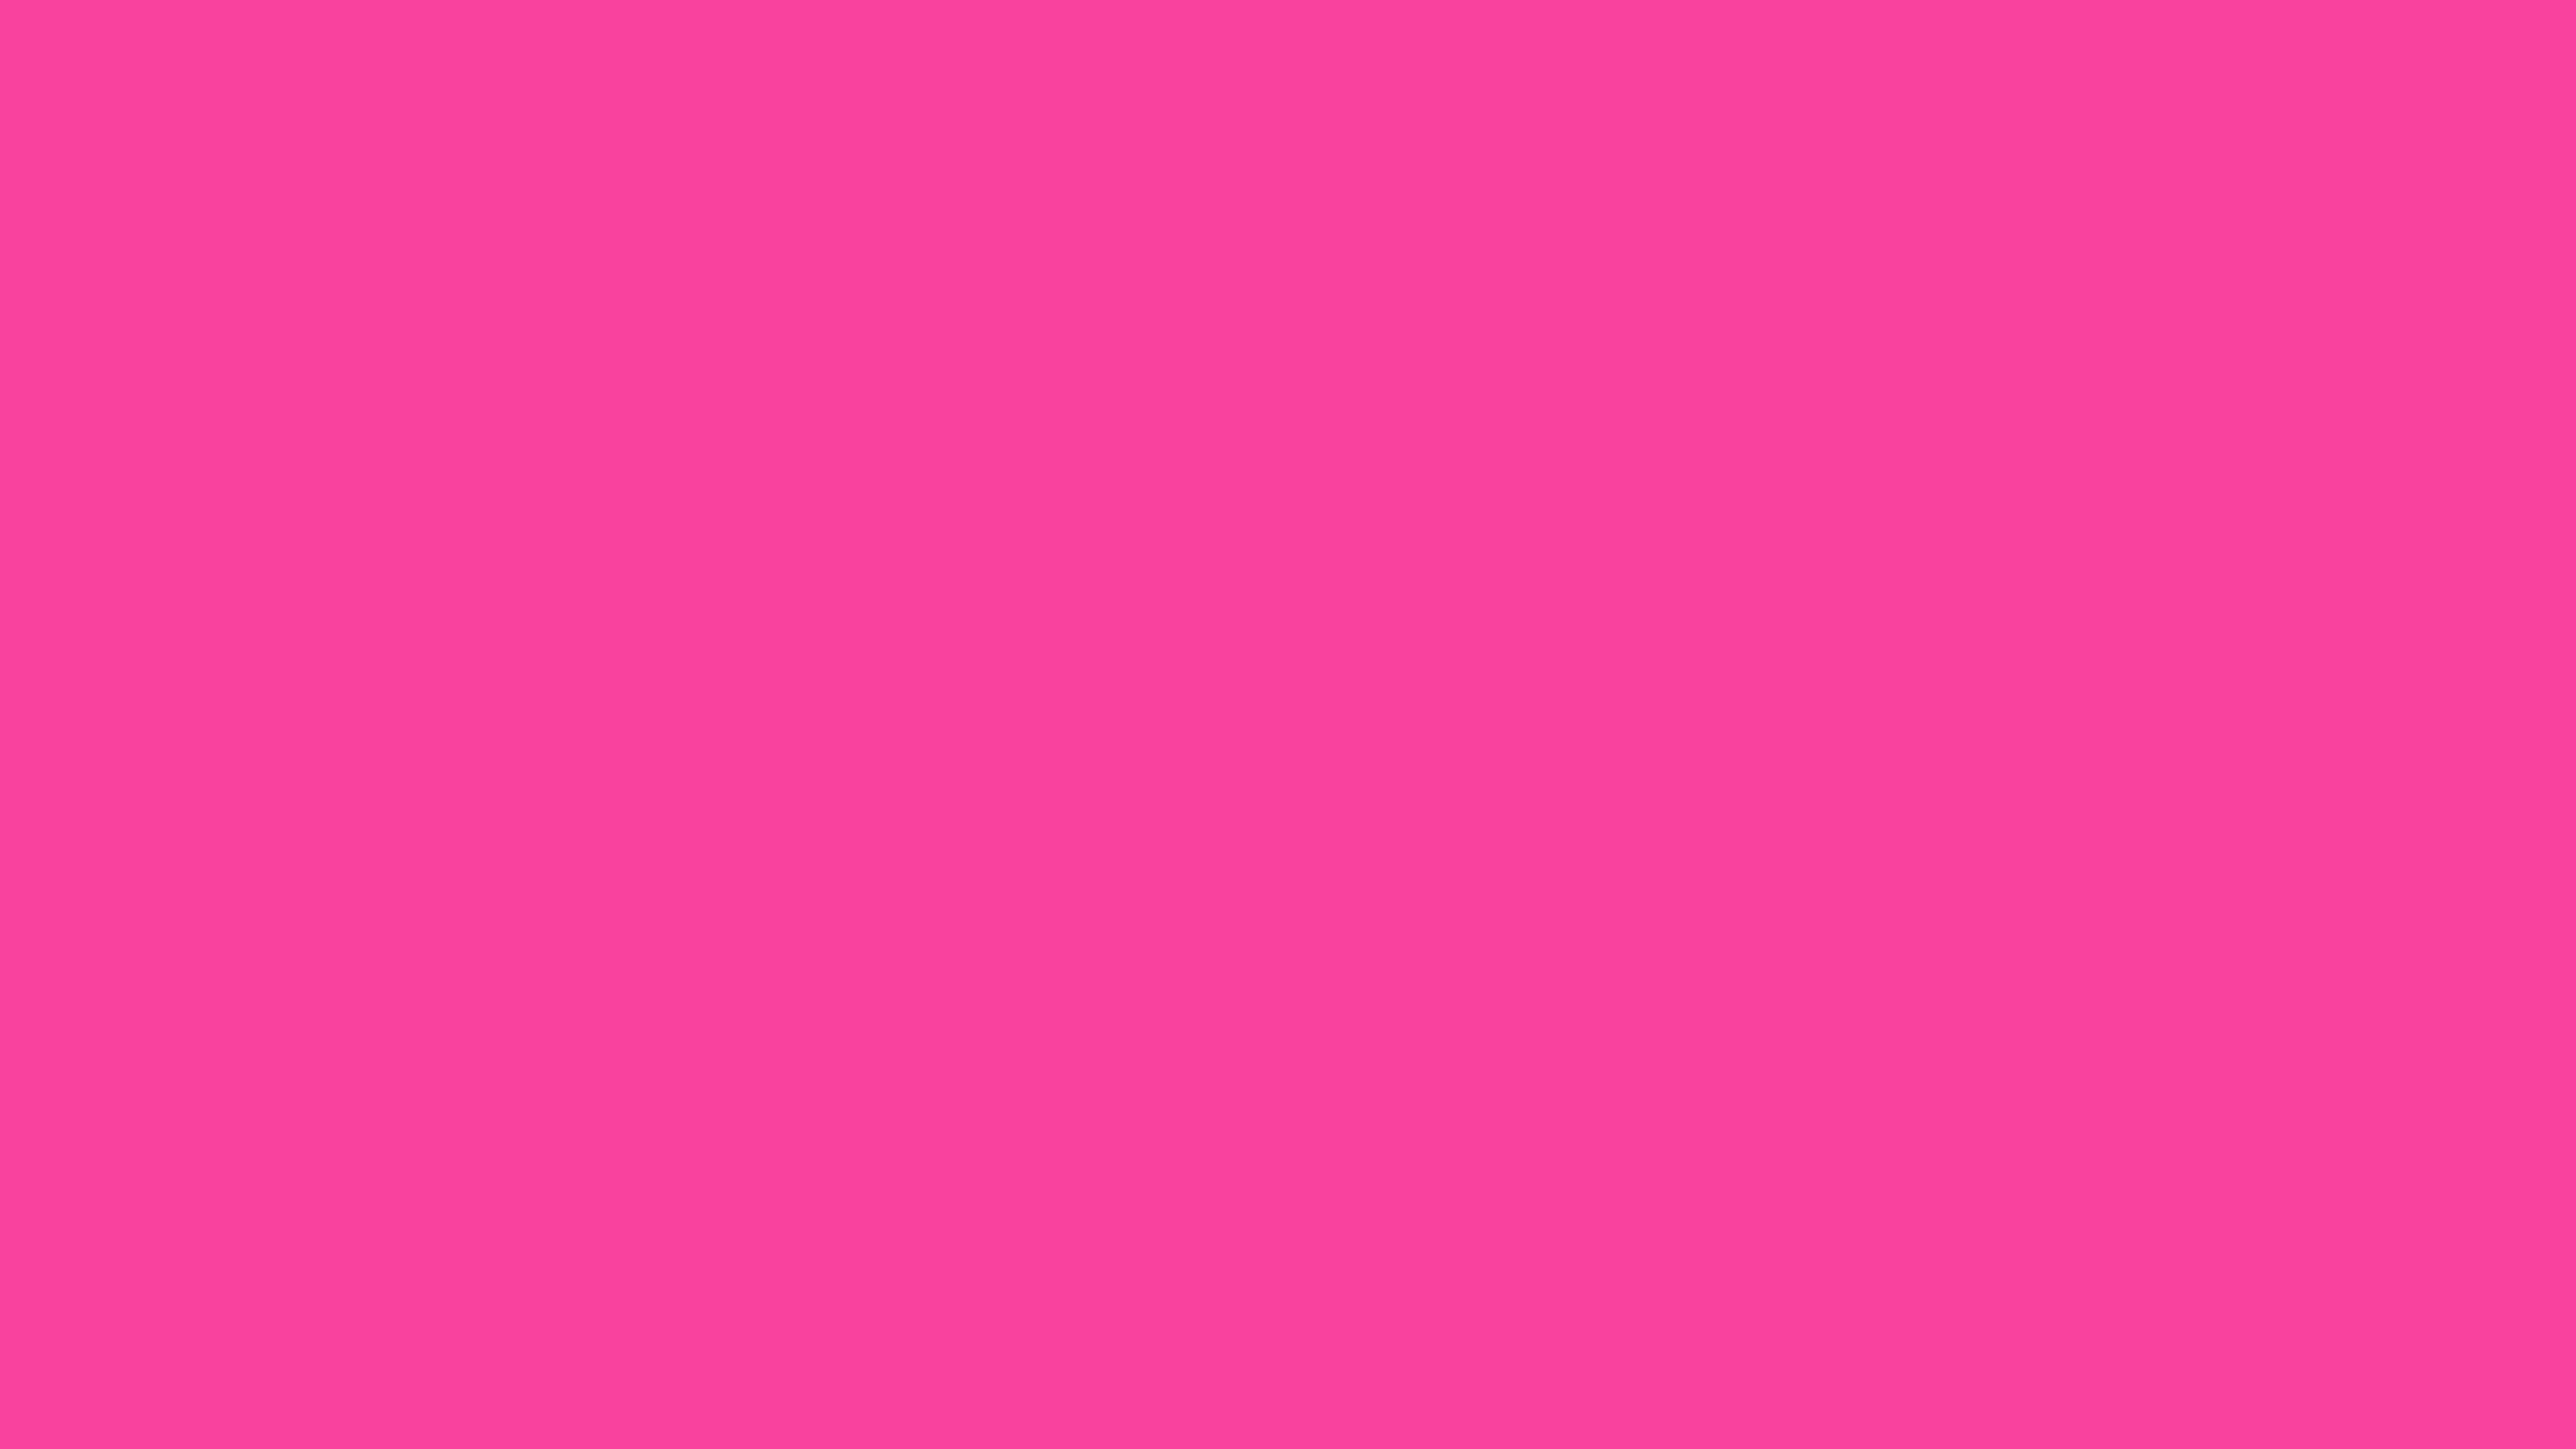 4096x2304 Rose Bonbon Solid Color Background